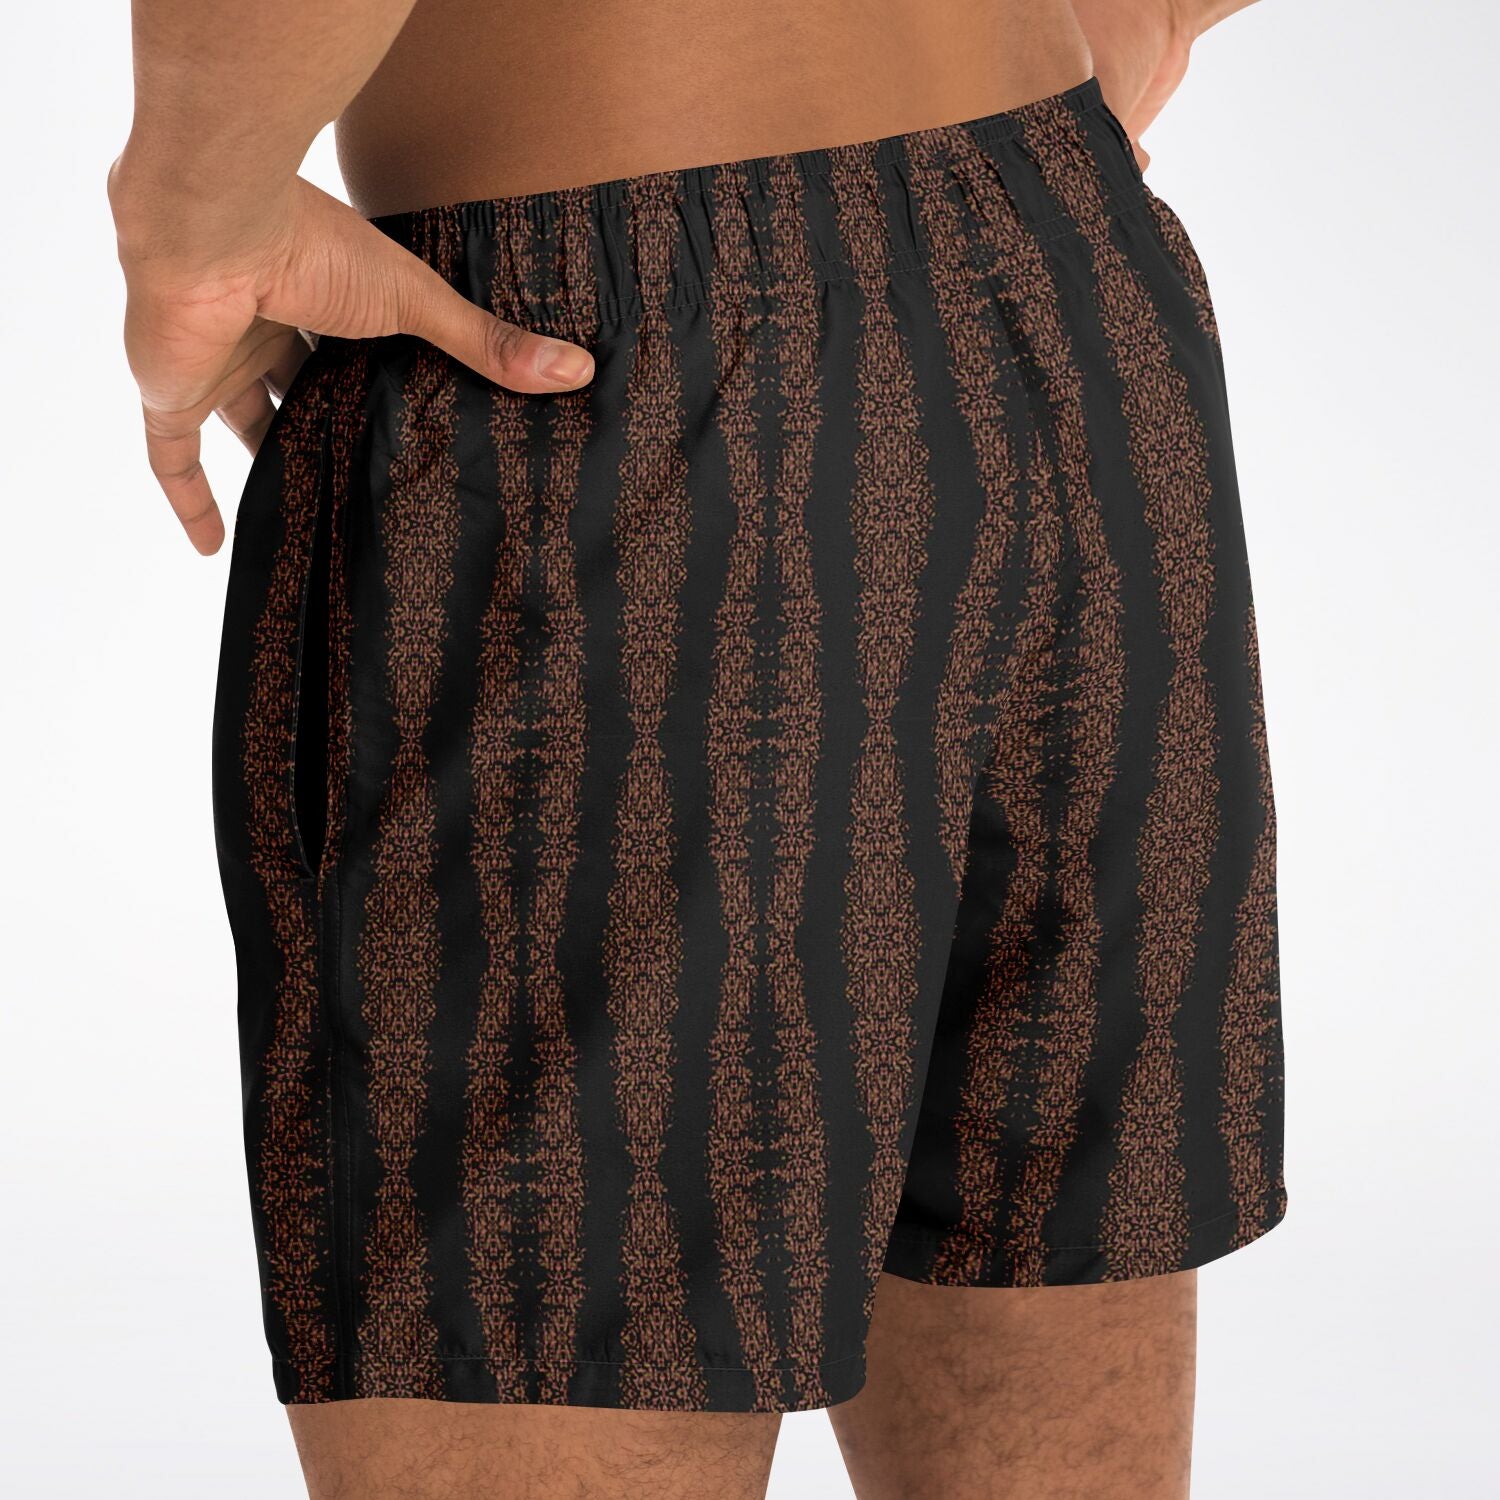 designer black swim trunks for men